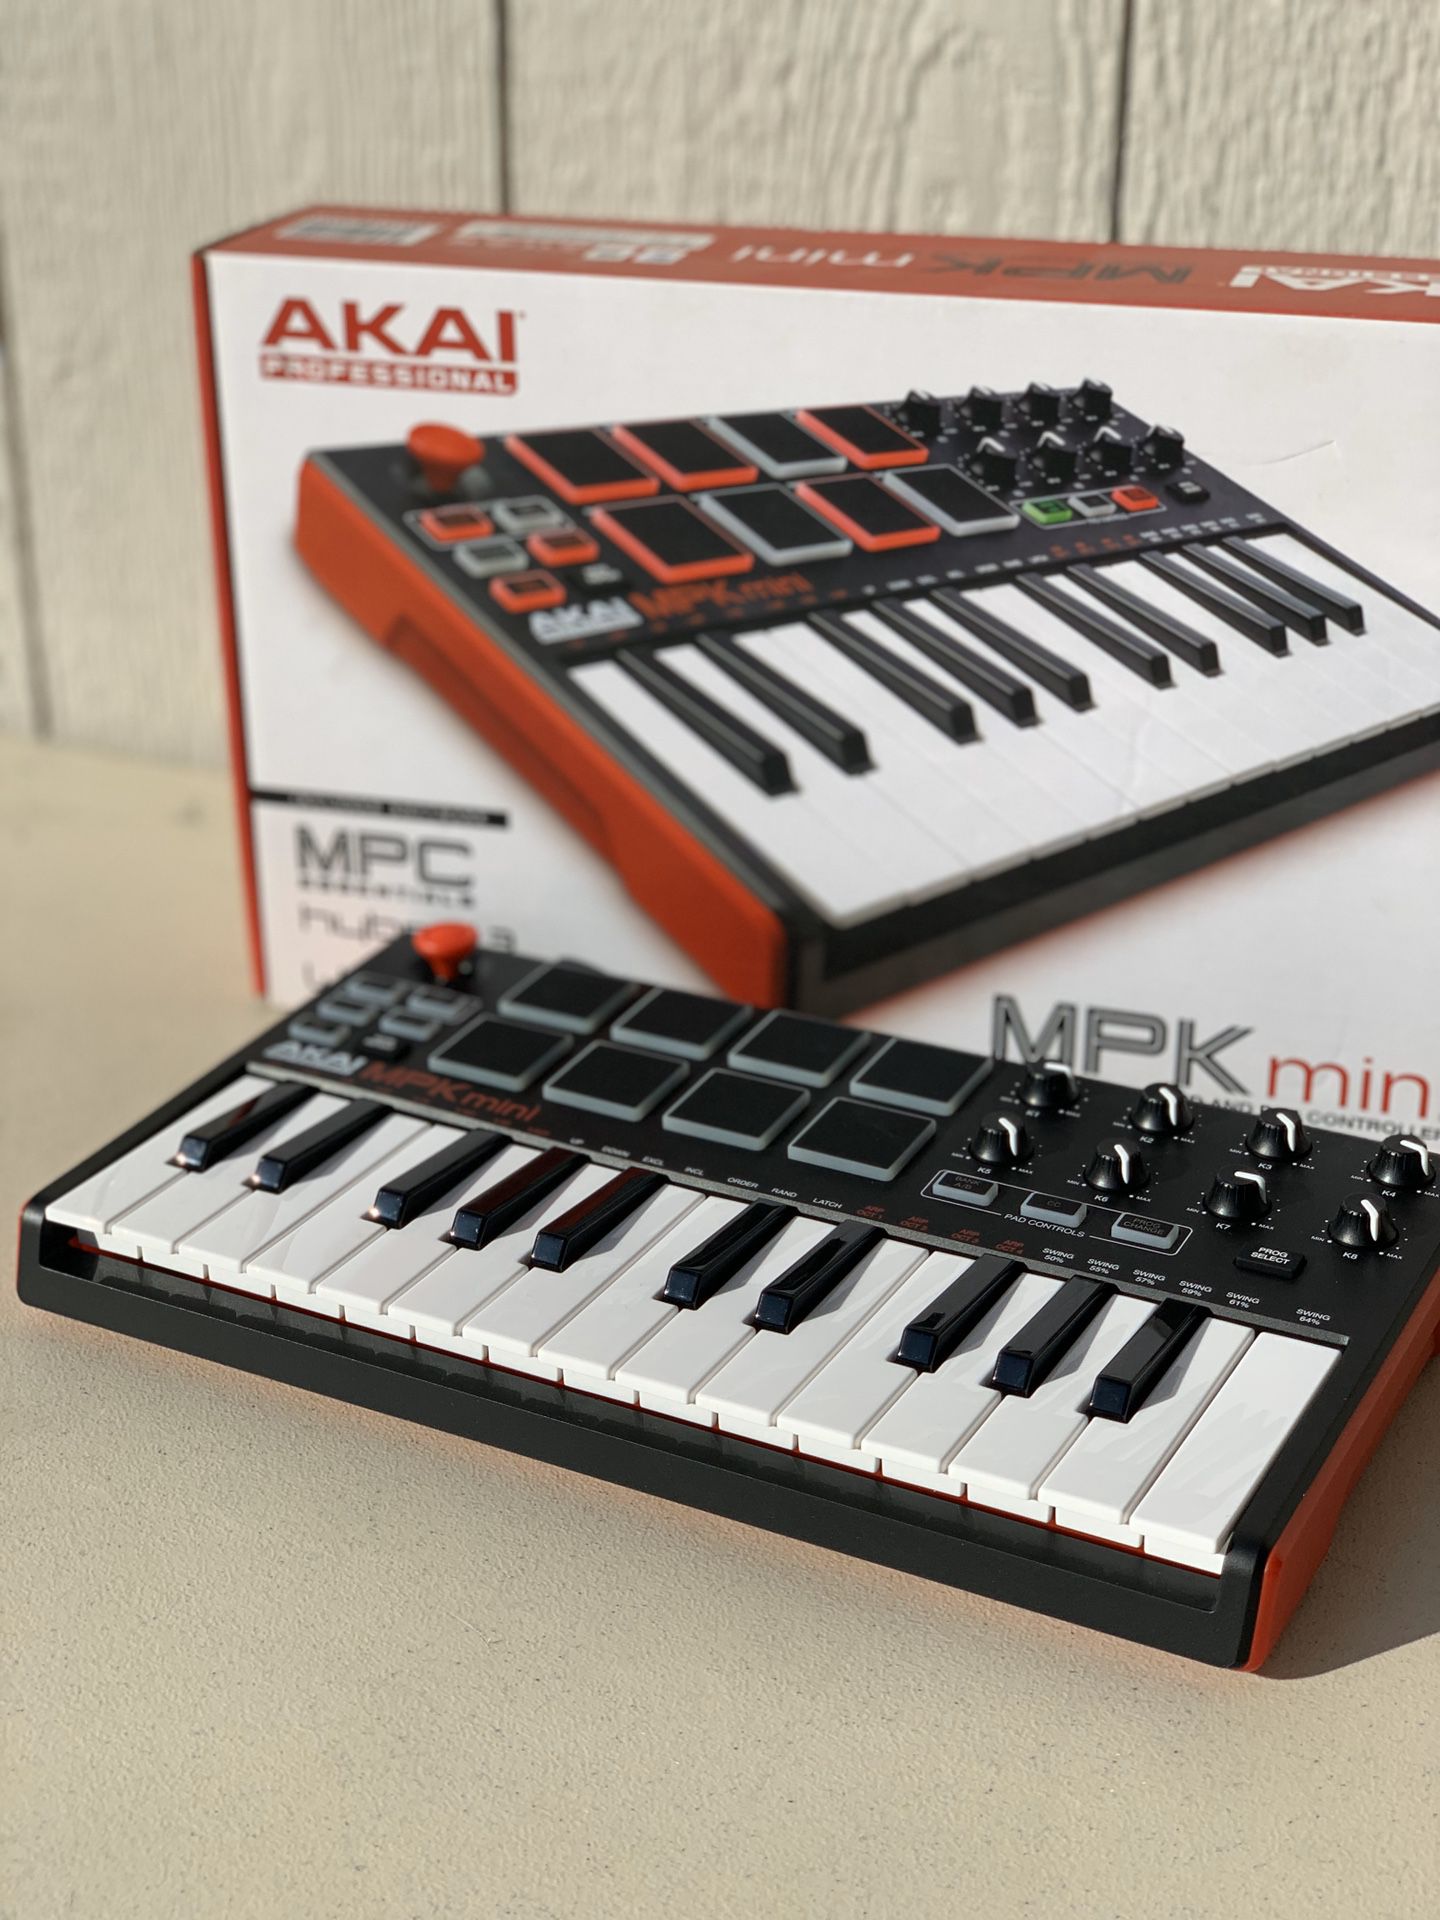 Akai MPK mini keyboard and pad controller